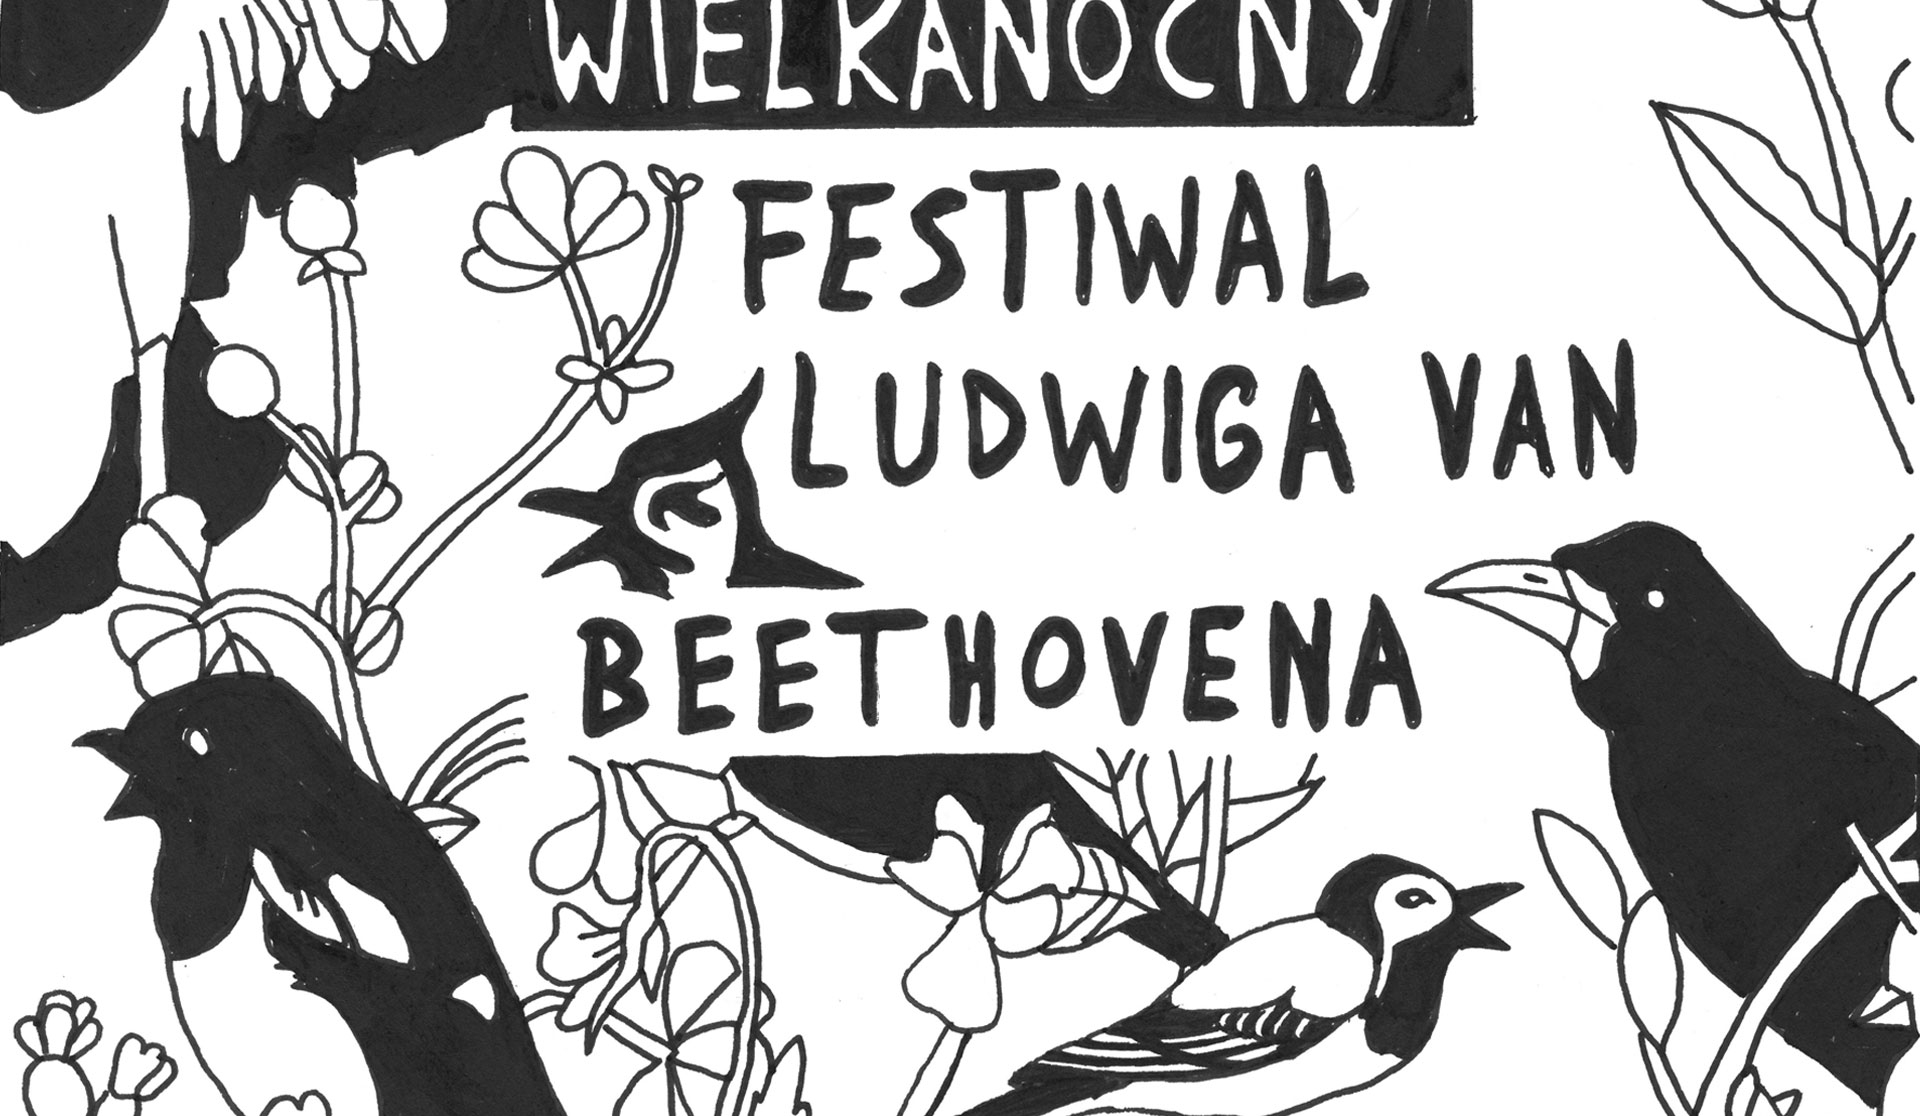 27.03.2018 – Wielkanocny Festiwal Ludwiga van Beethovena, Warszawa